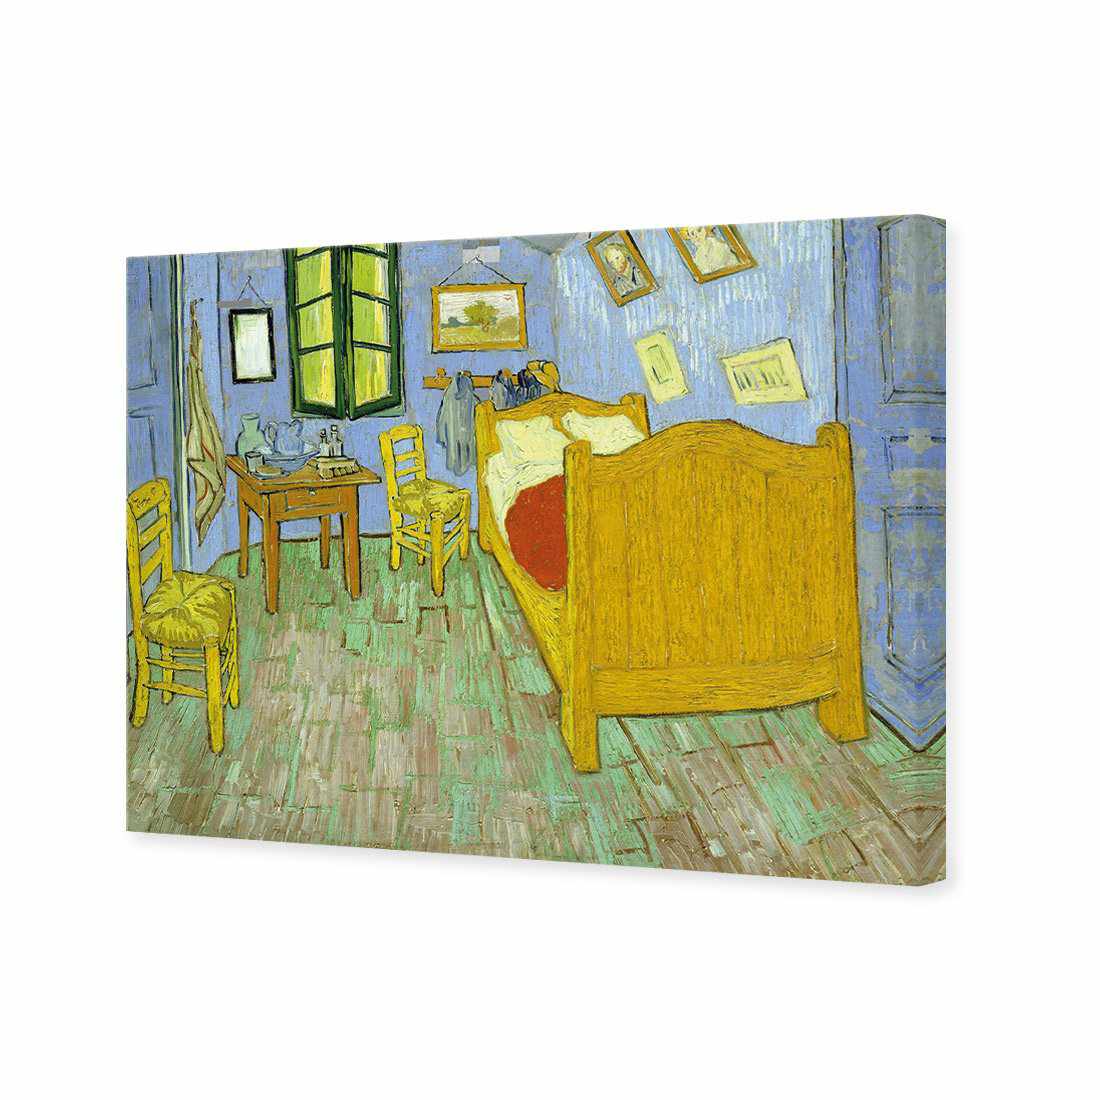 Vincent's Bedroom - Van Gogh Canvas Art-Canvas-Wall Art Designs-45x30cm-Canvas - No Frame-Wall Art Designs